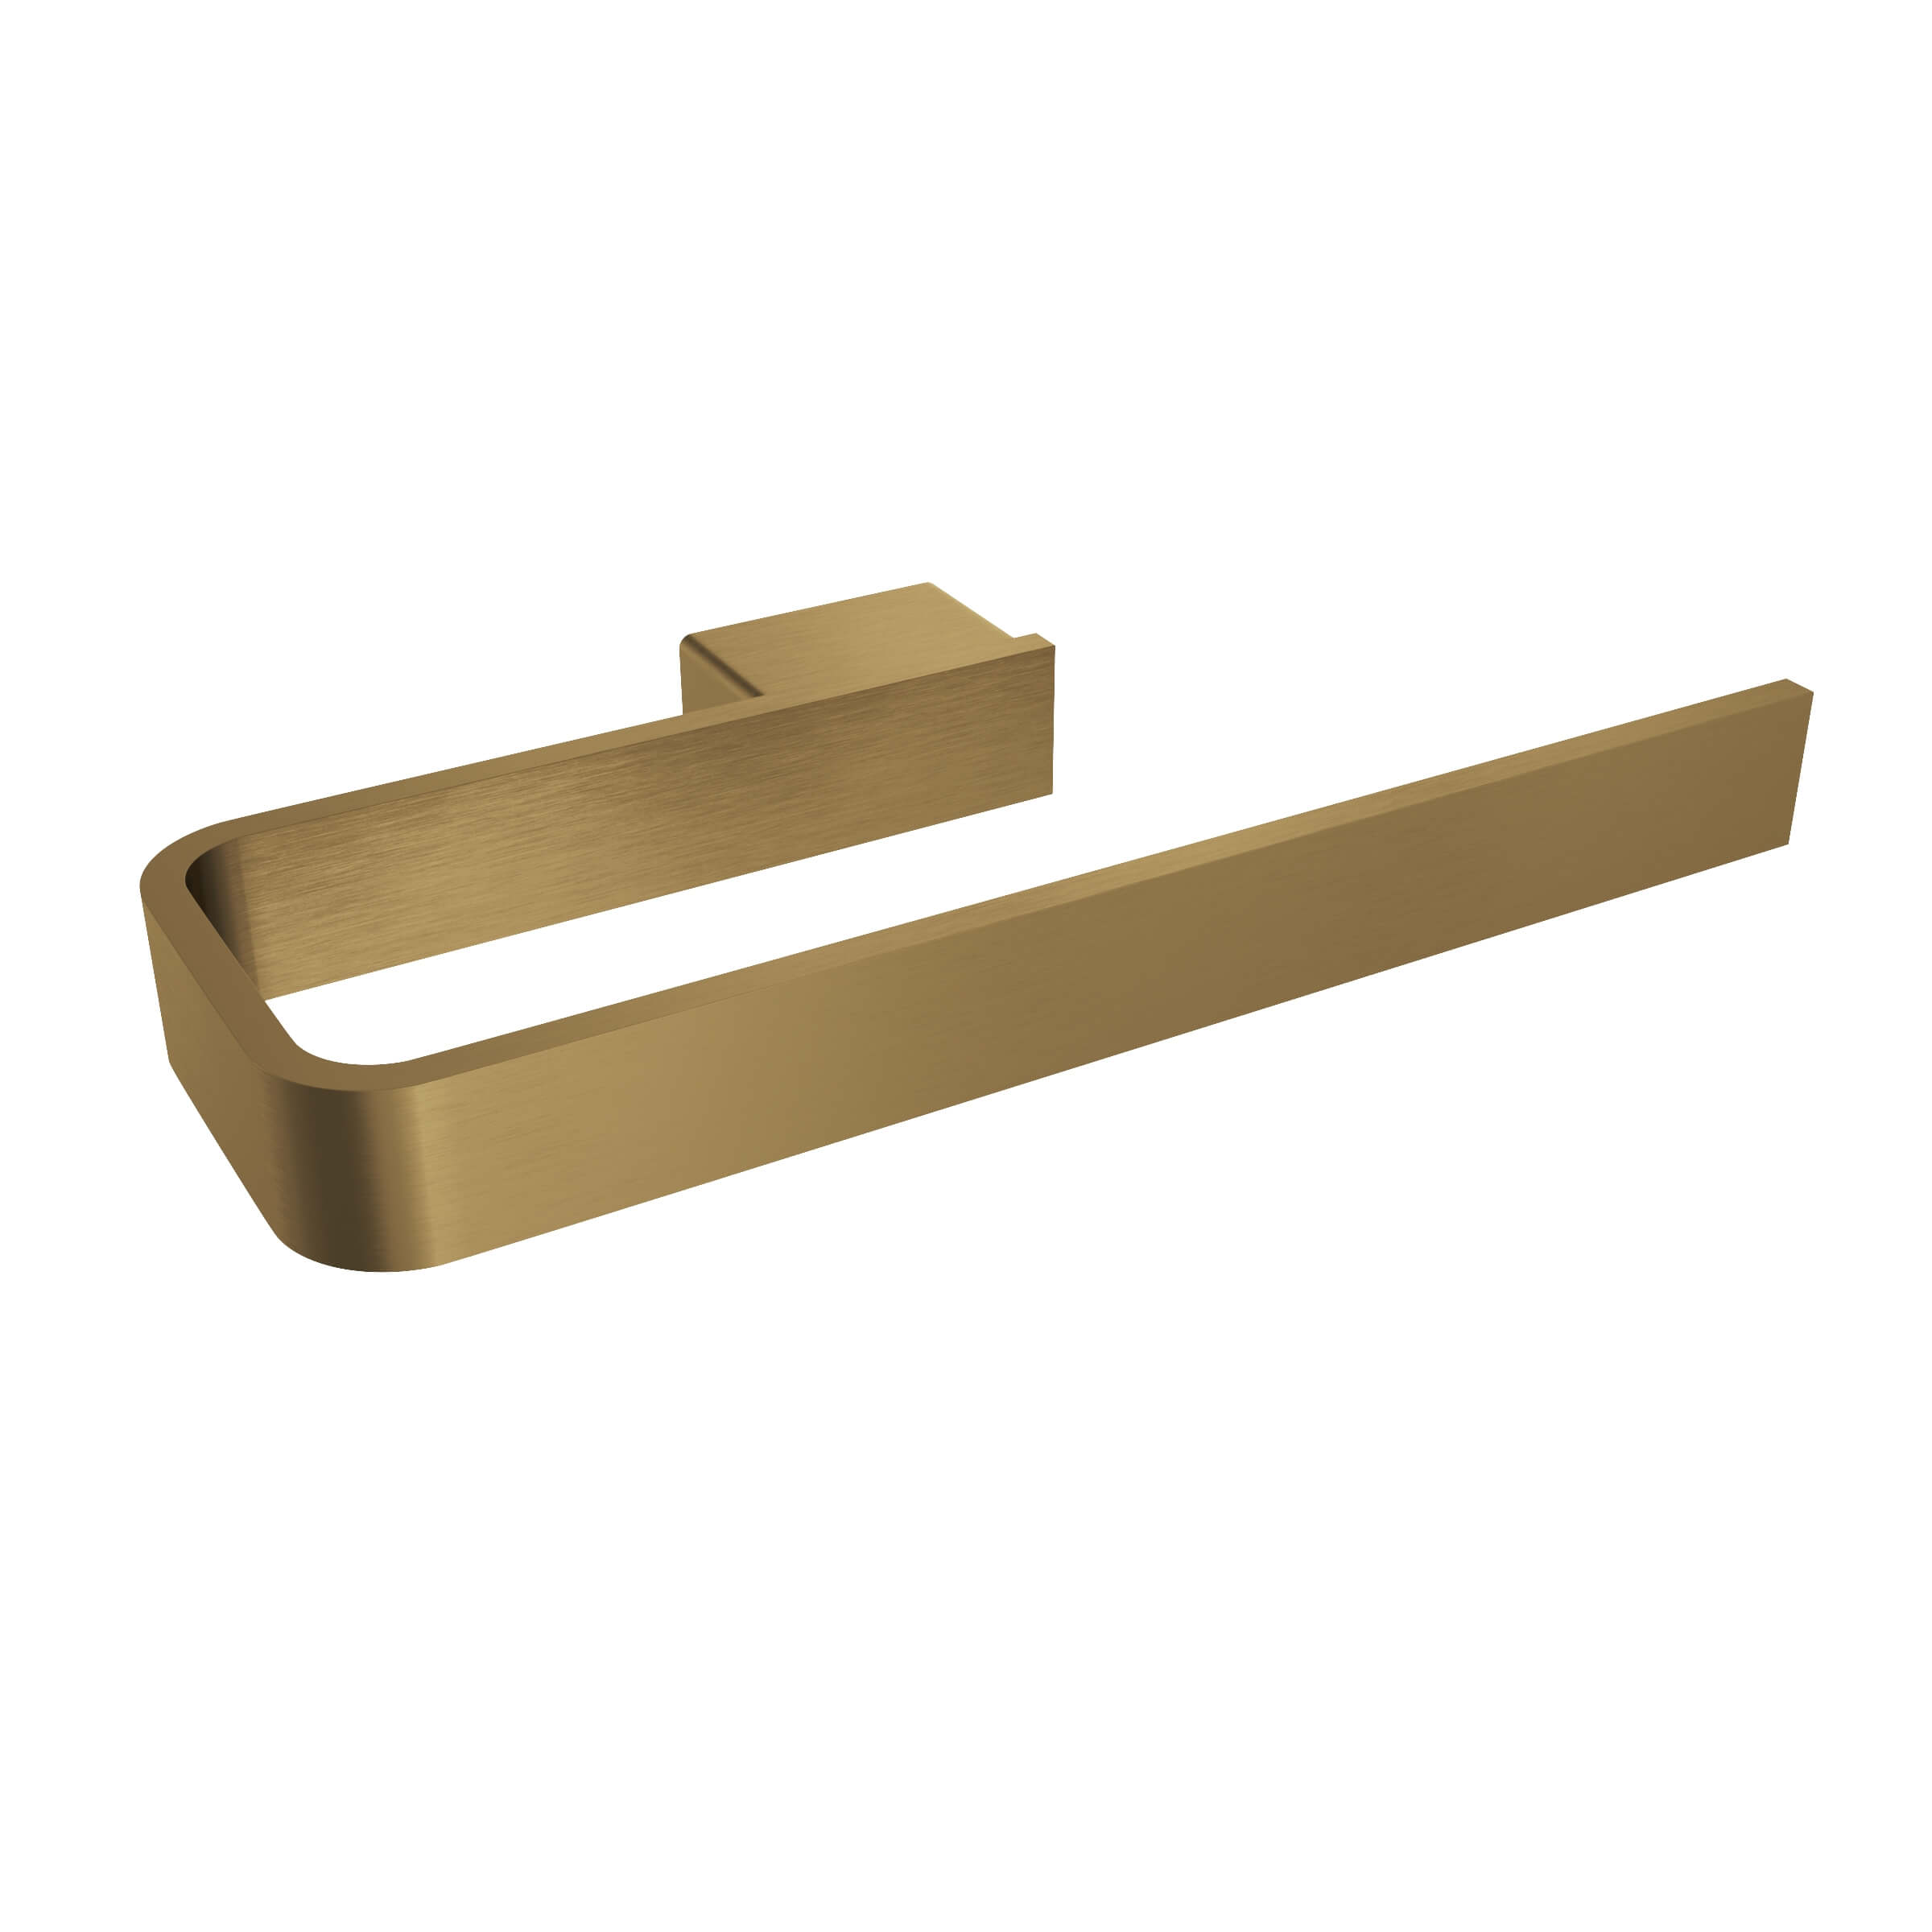 ICO Bath V3310-BGD Cinder 8" Towel Bar - Brushed Gold Dark